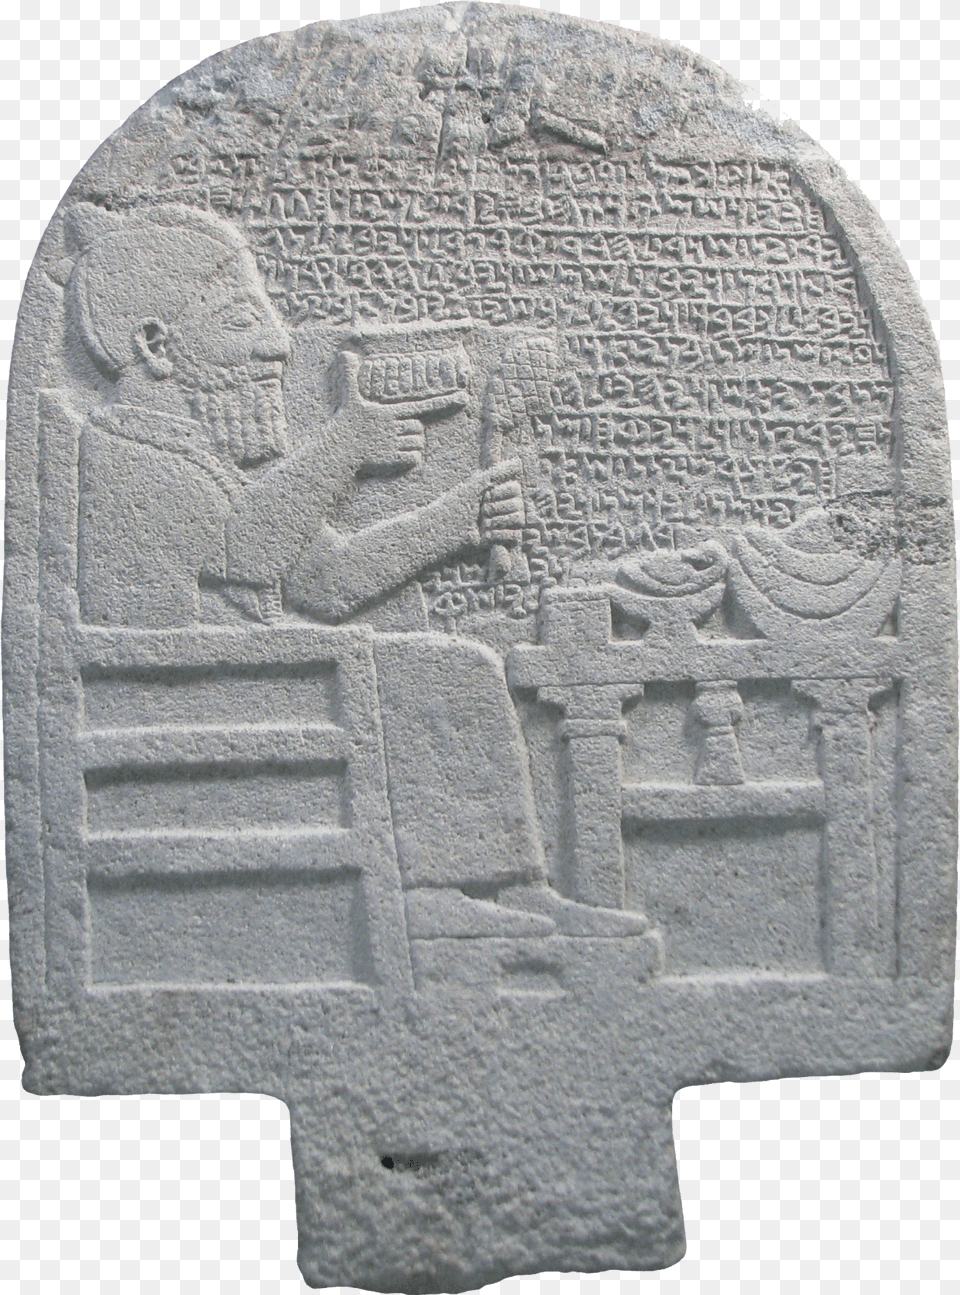 Kuttamuwa Stele, Archaeology, Tomb, Gravestone, Person Png Image